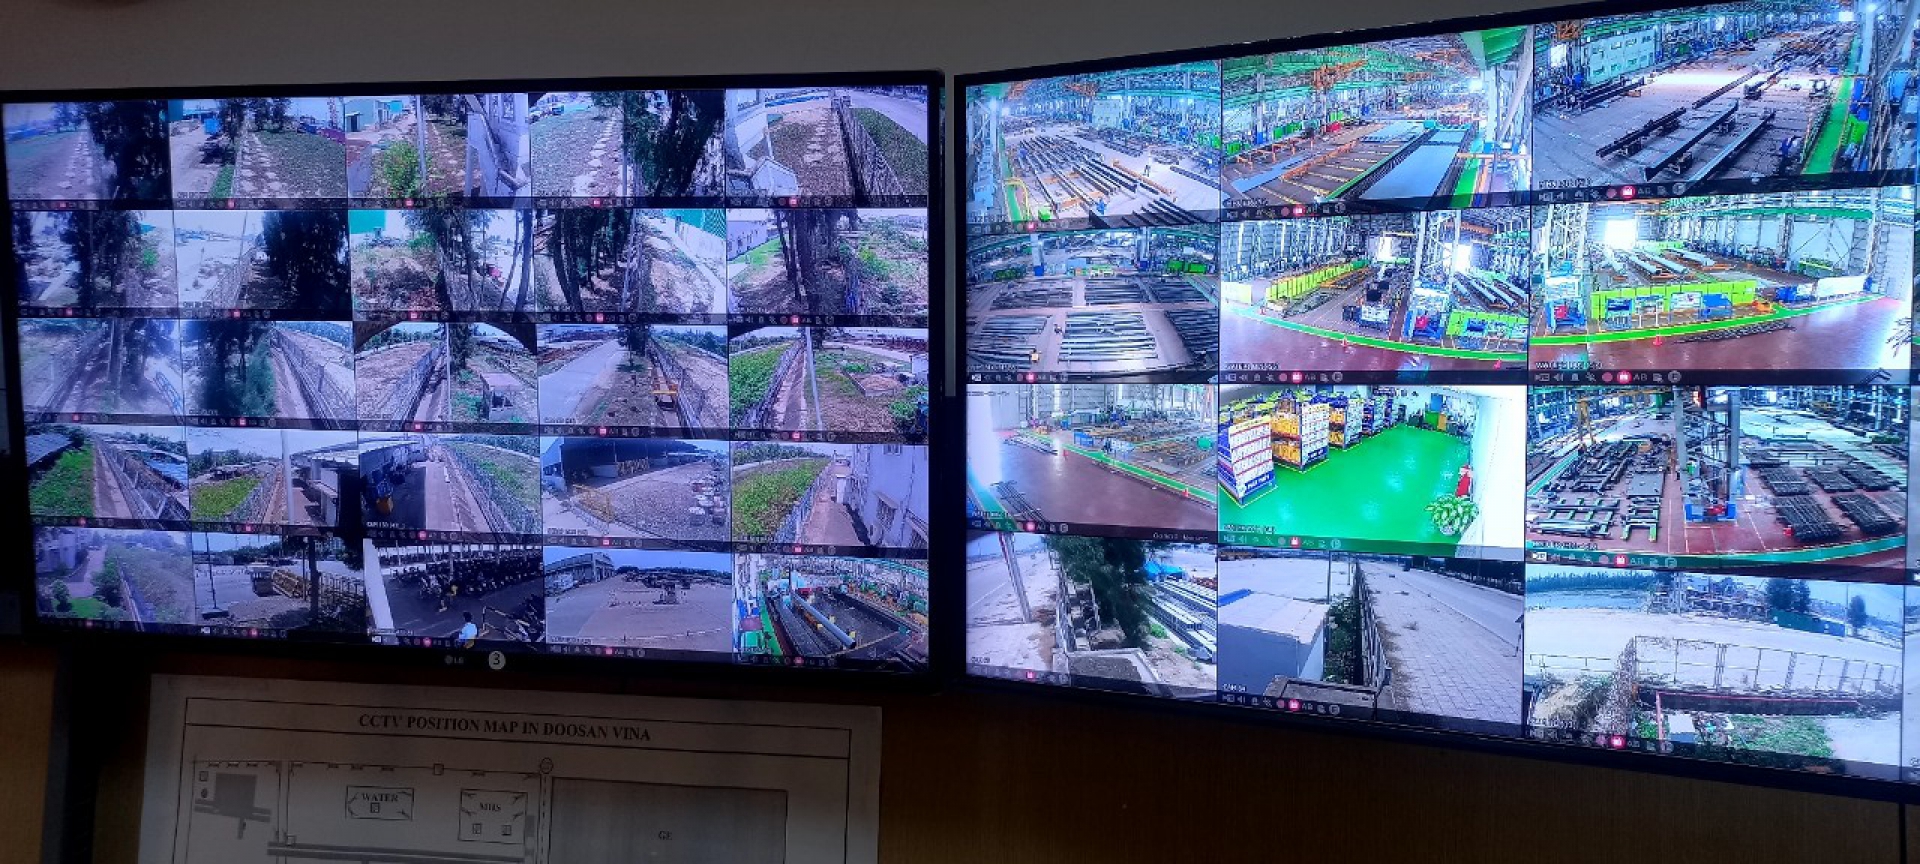 Dịch vụ bảo trì hệ thống CCTV tại nhà máy Doosan Vina, Dung Quất, Quảng Ngãi